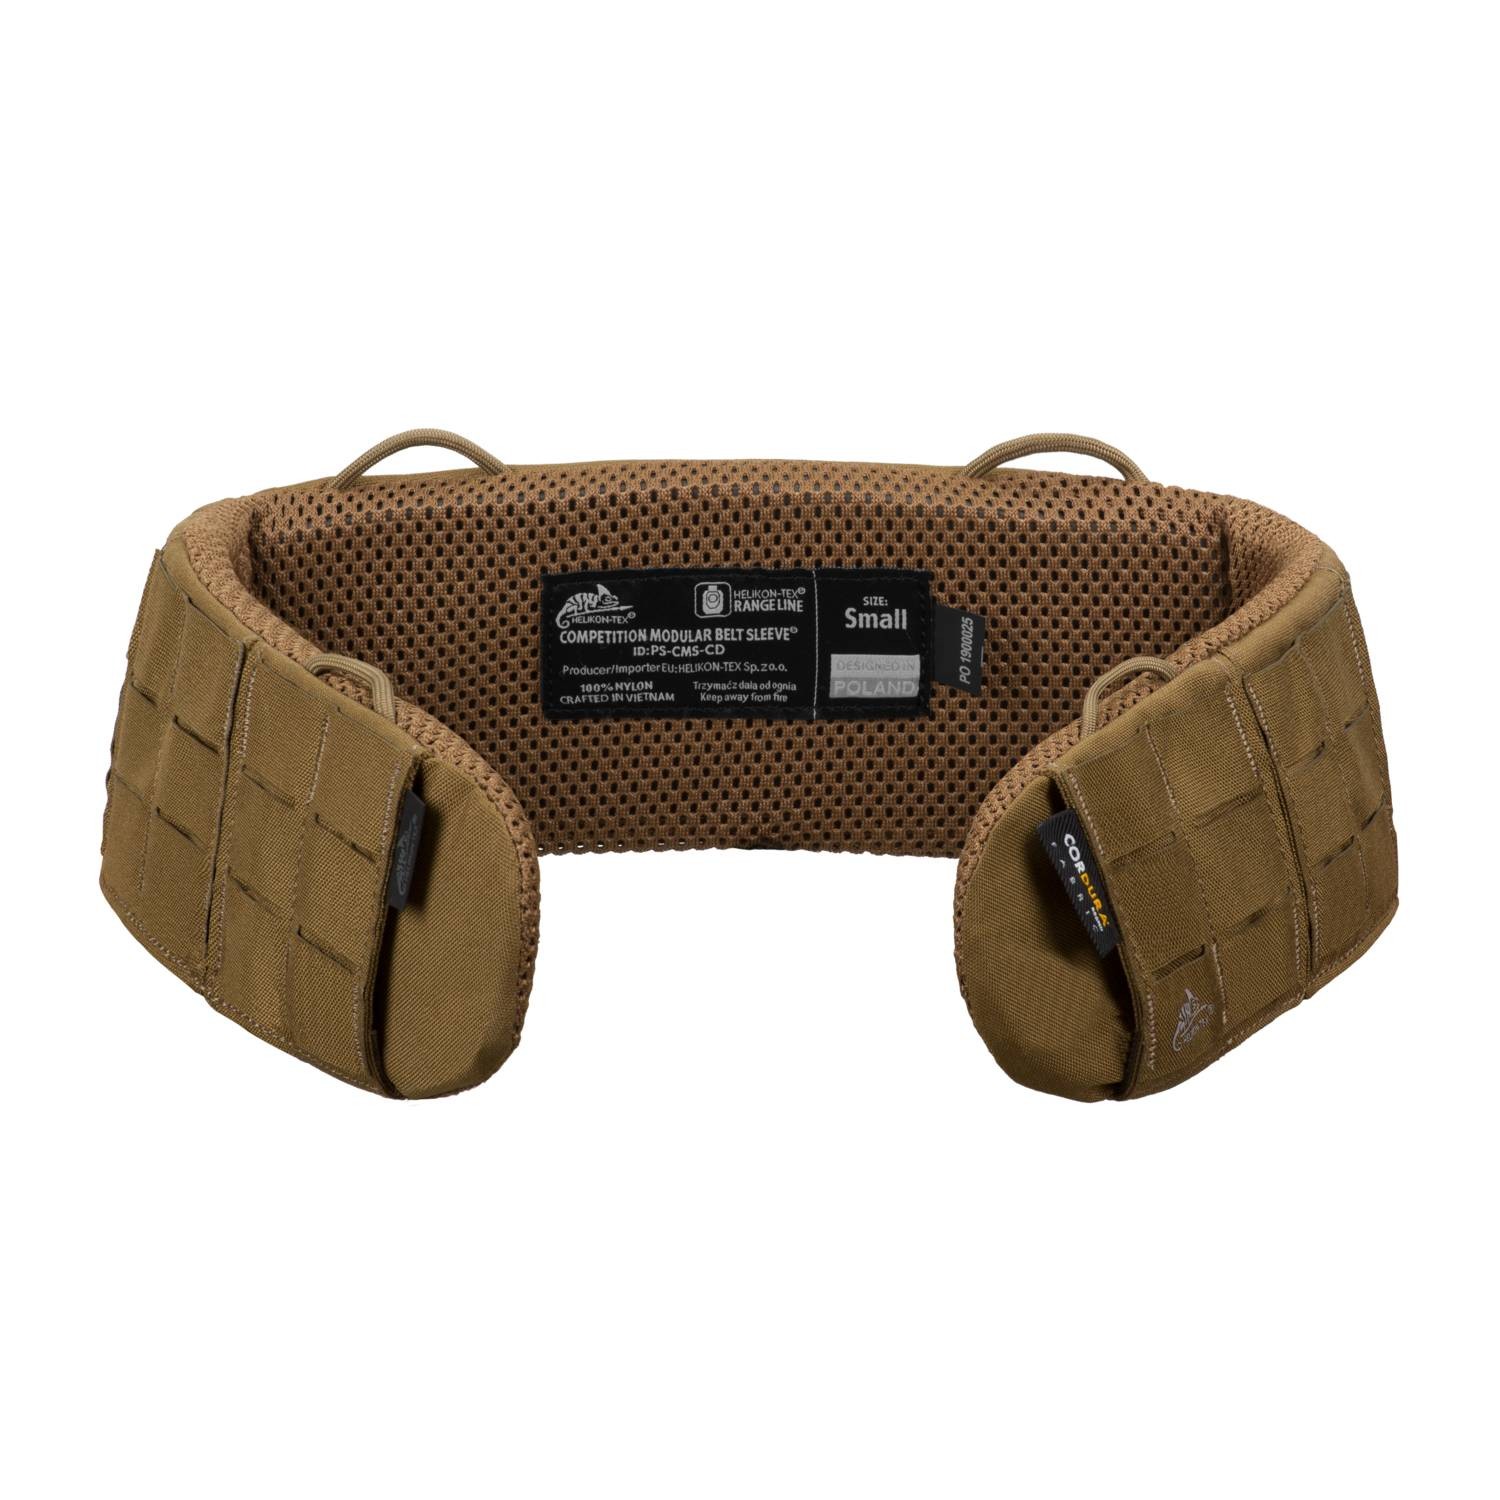 Molle Battle Belt Tactical Padded Patrol Adjustable Hunting Waist Patrol  Belts